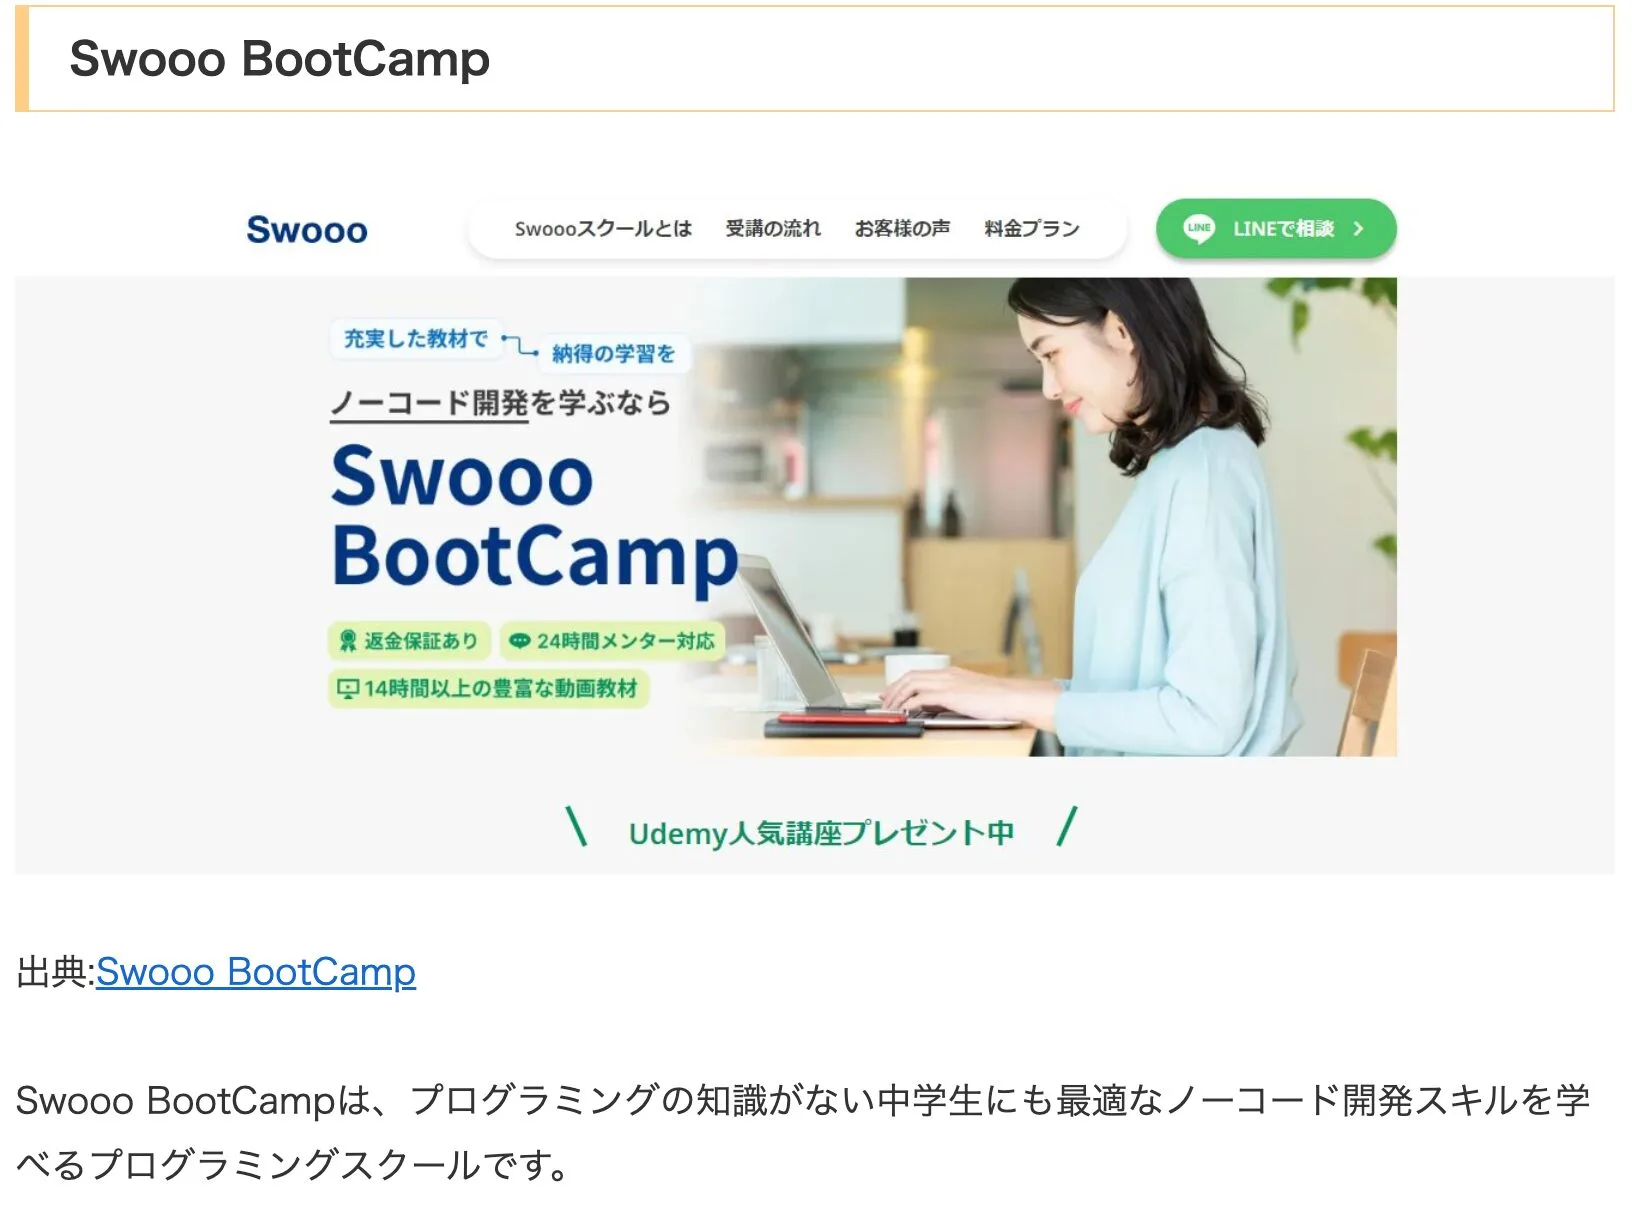 【メディア掲載】CODERS（コーダーズ）様に「Swooo BootCamp」をご紹介いただきました